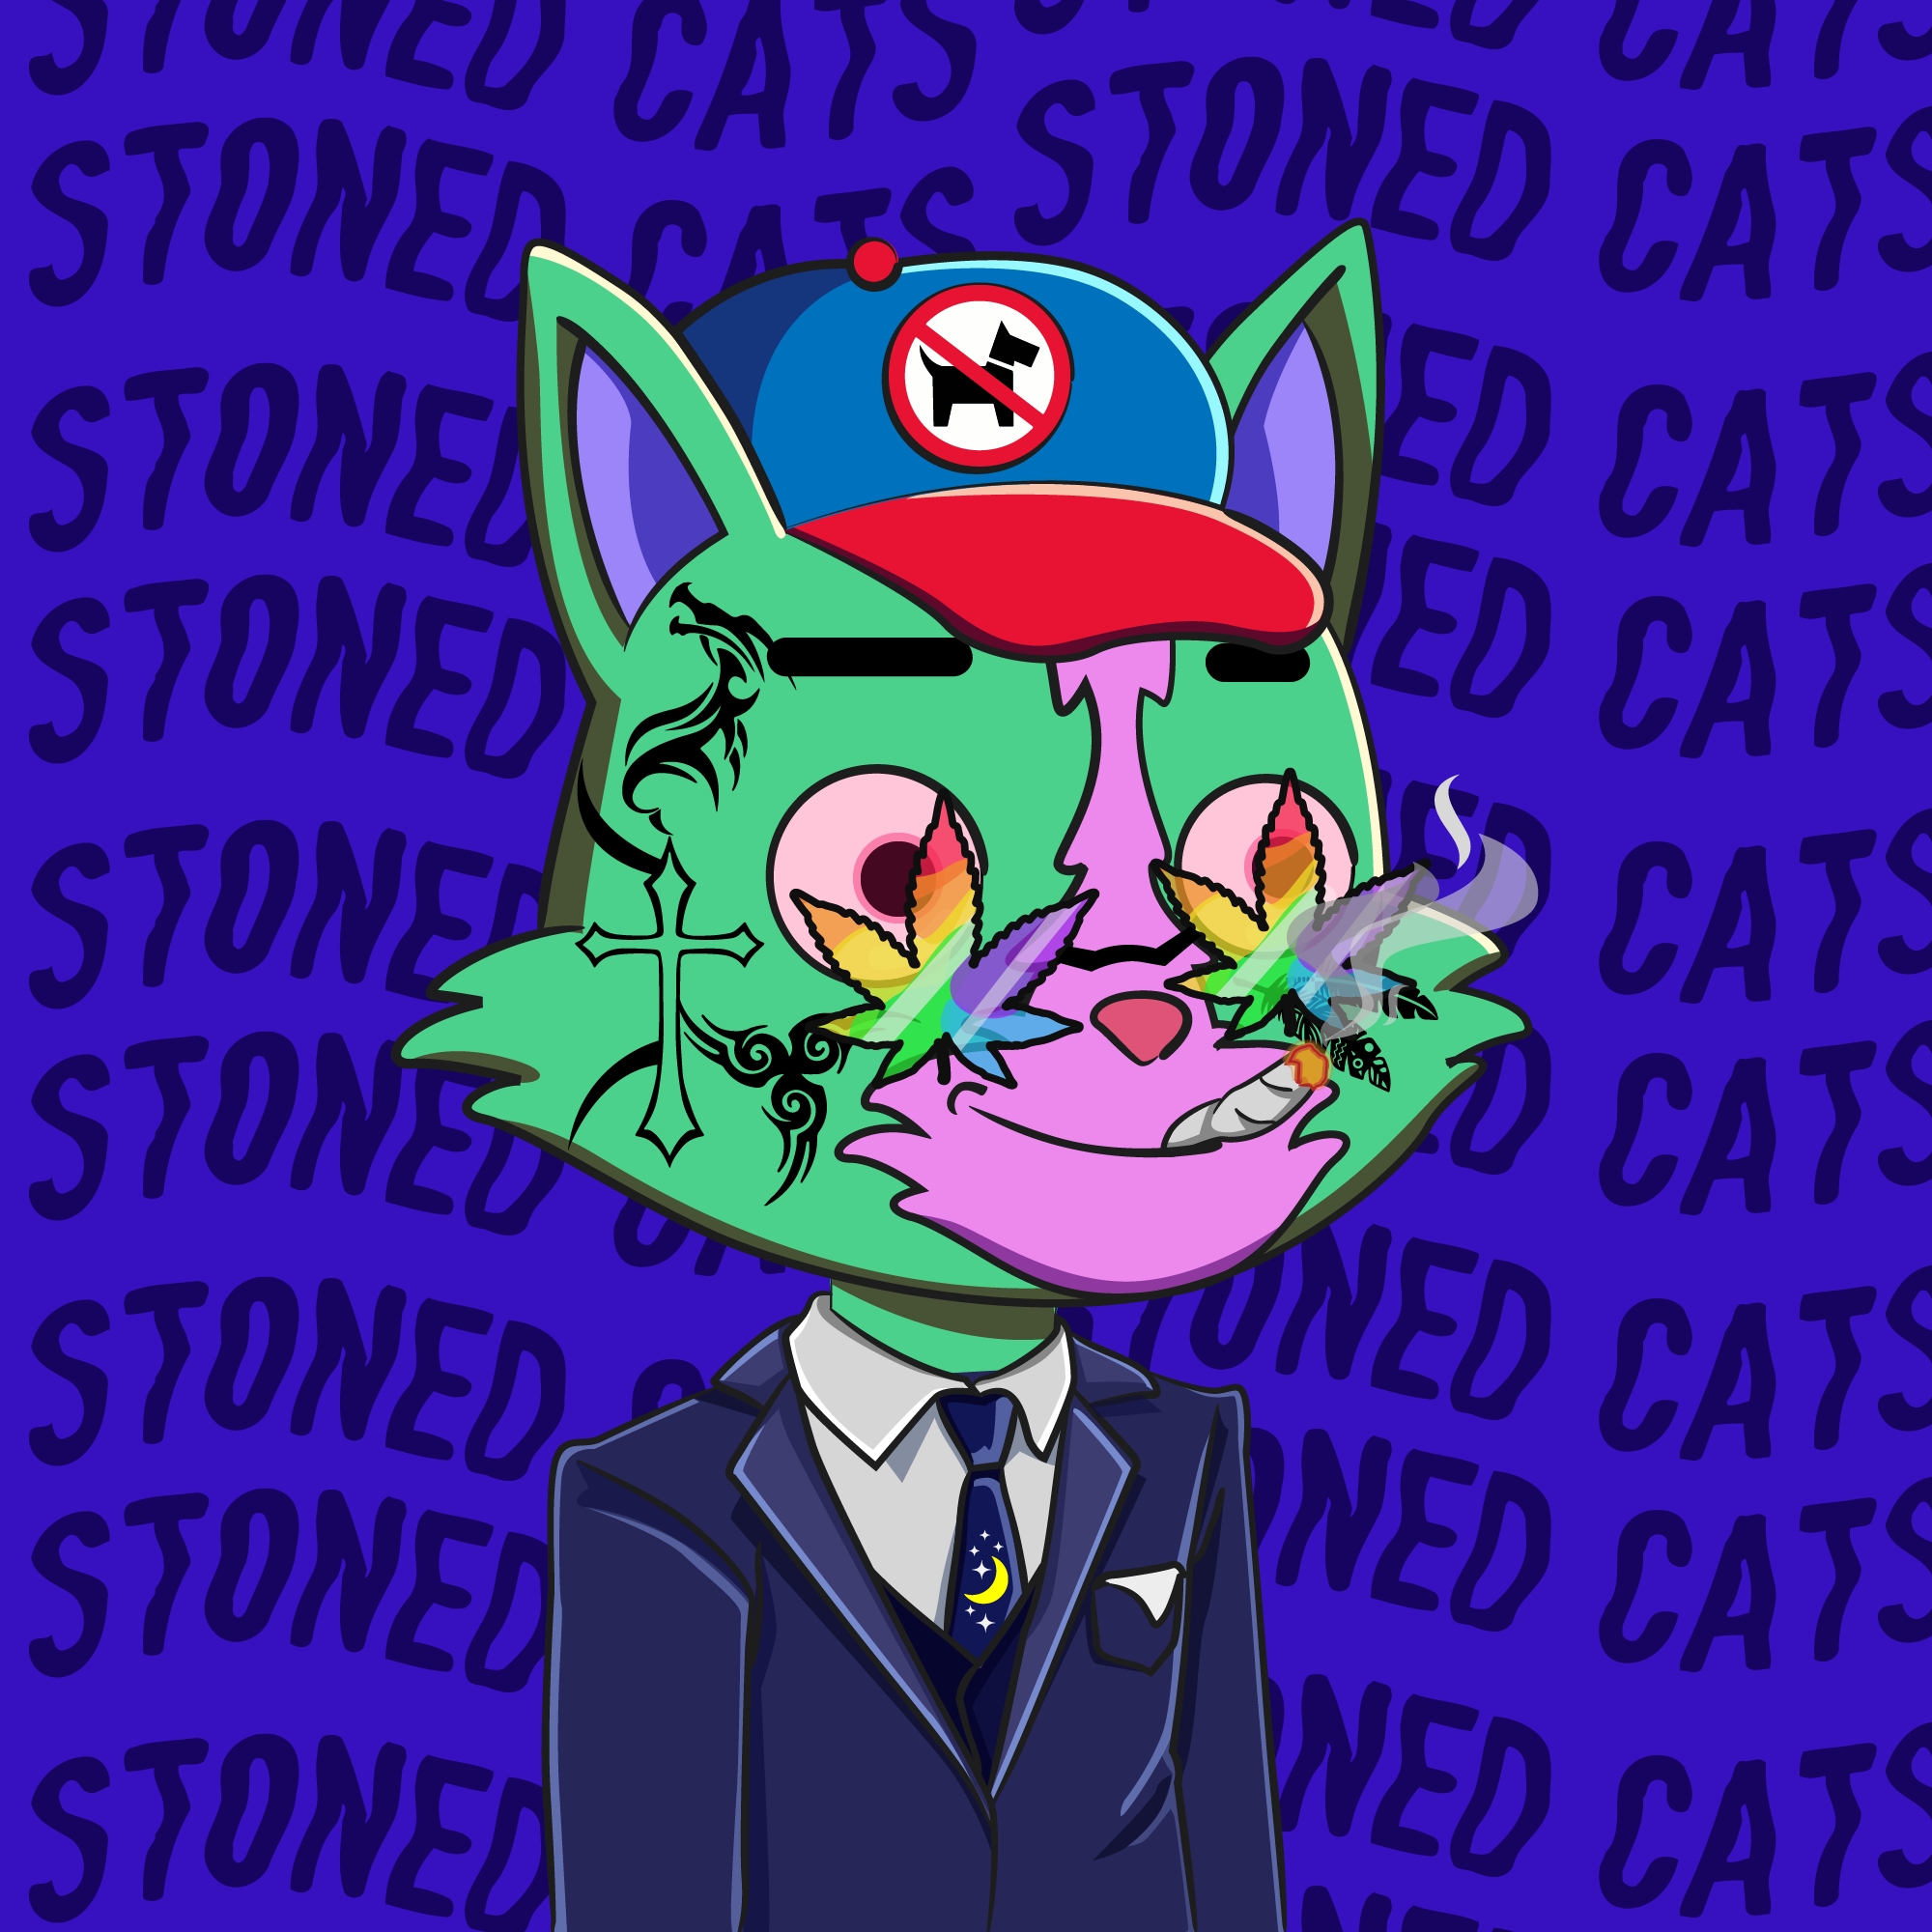 Stoned Cat #4377